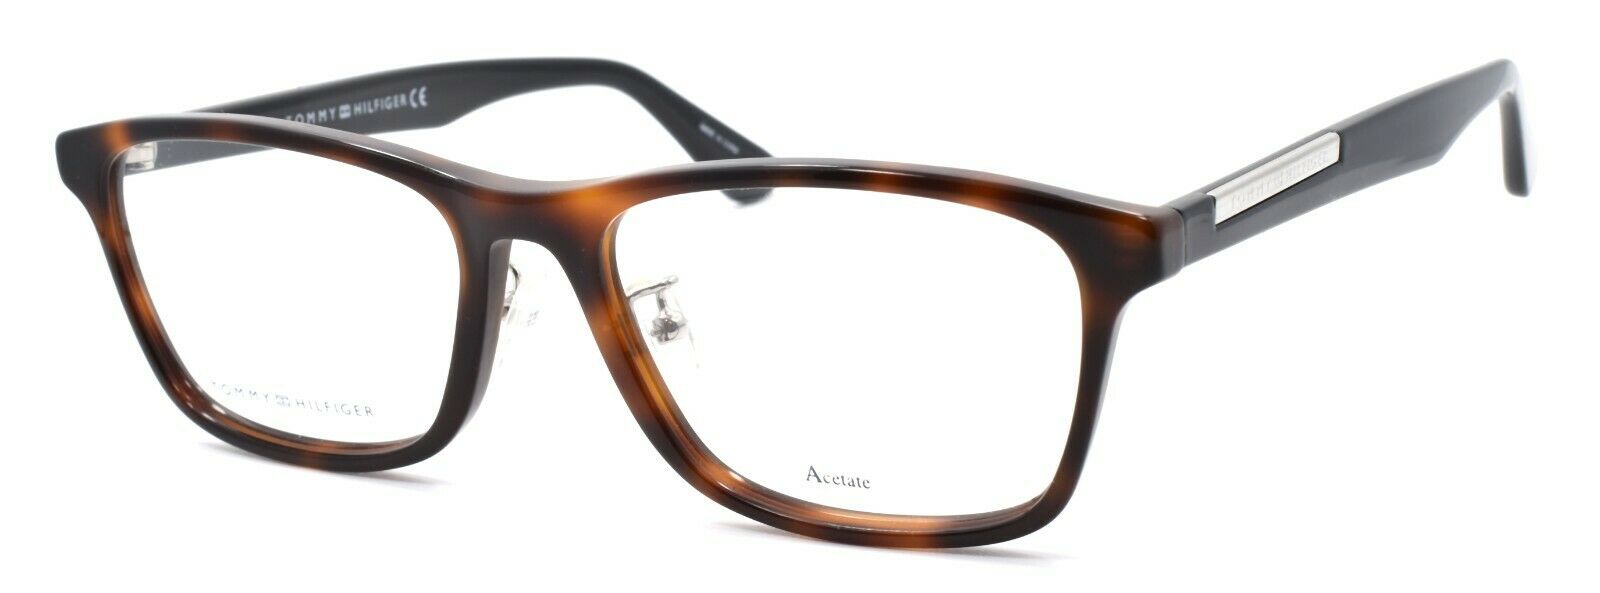 1-TOMMY HILFIGER TH 1582/F WR9 Men's Eyeglasses Frames 55-18-145 Brown Havana-716736078342-IKSpecs